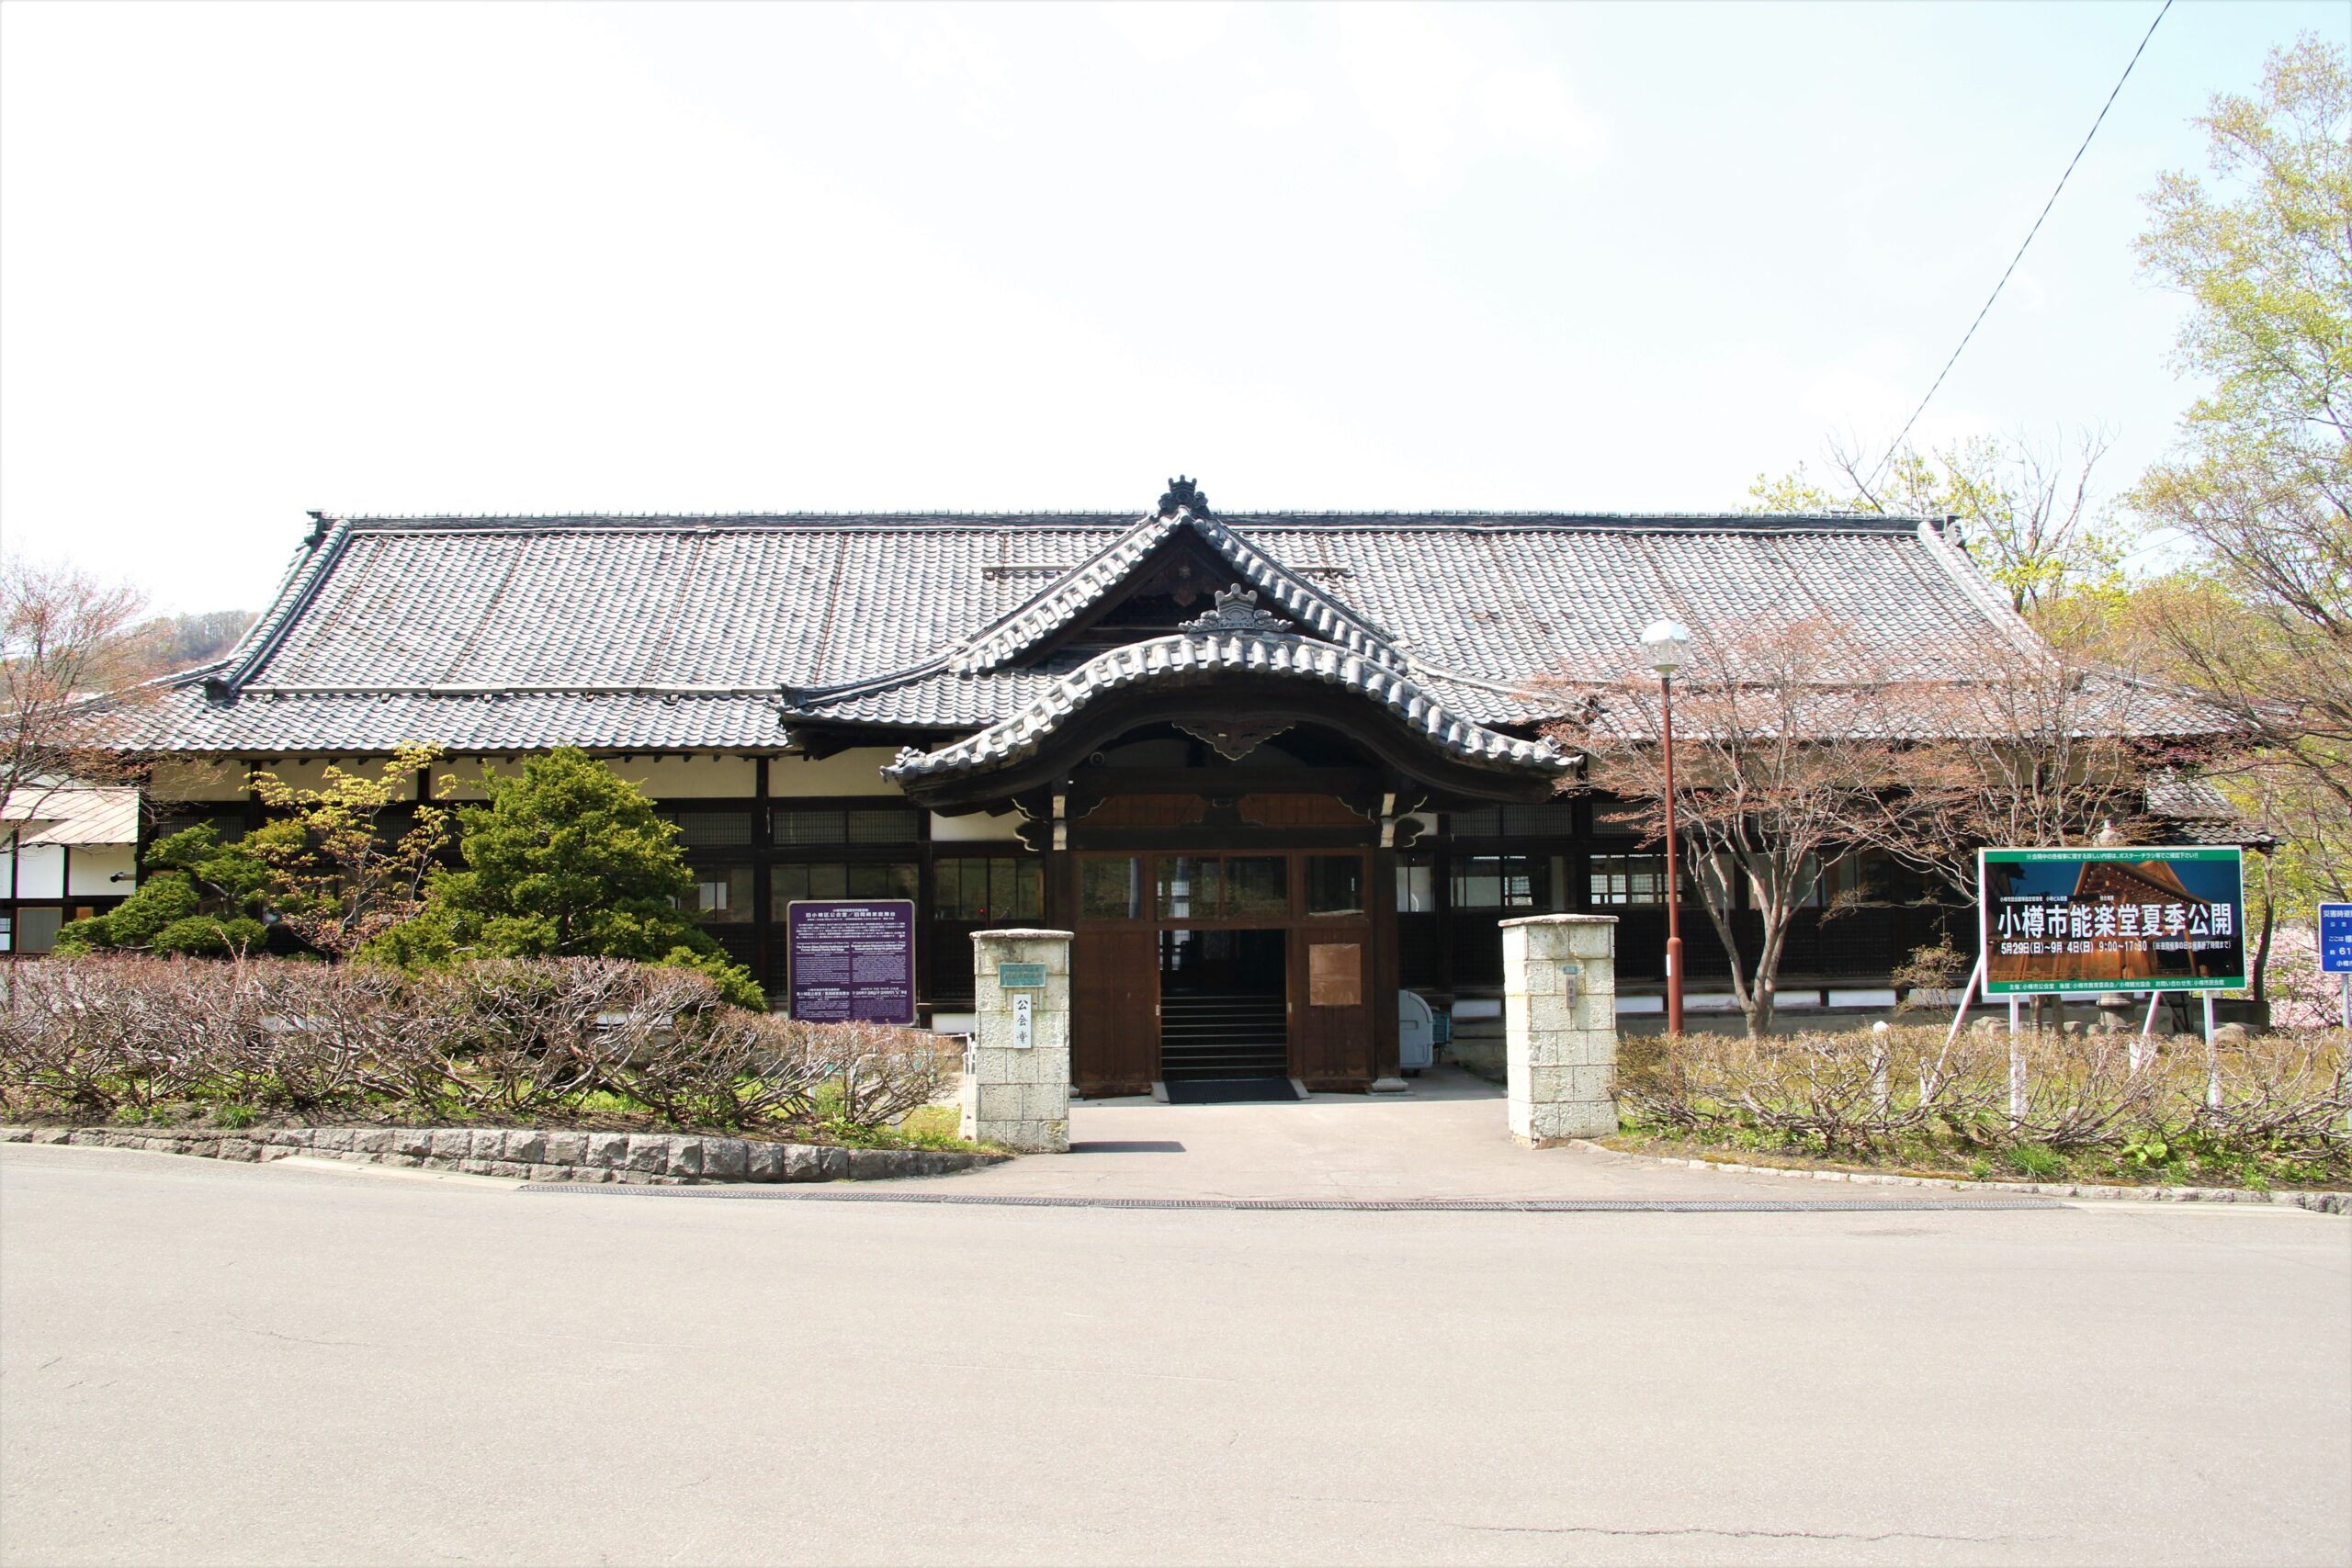 Former OKAZAKI NOH STAGE